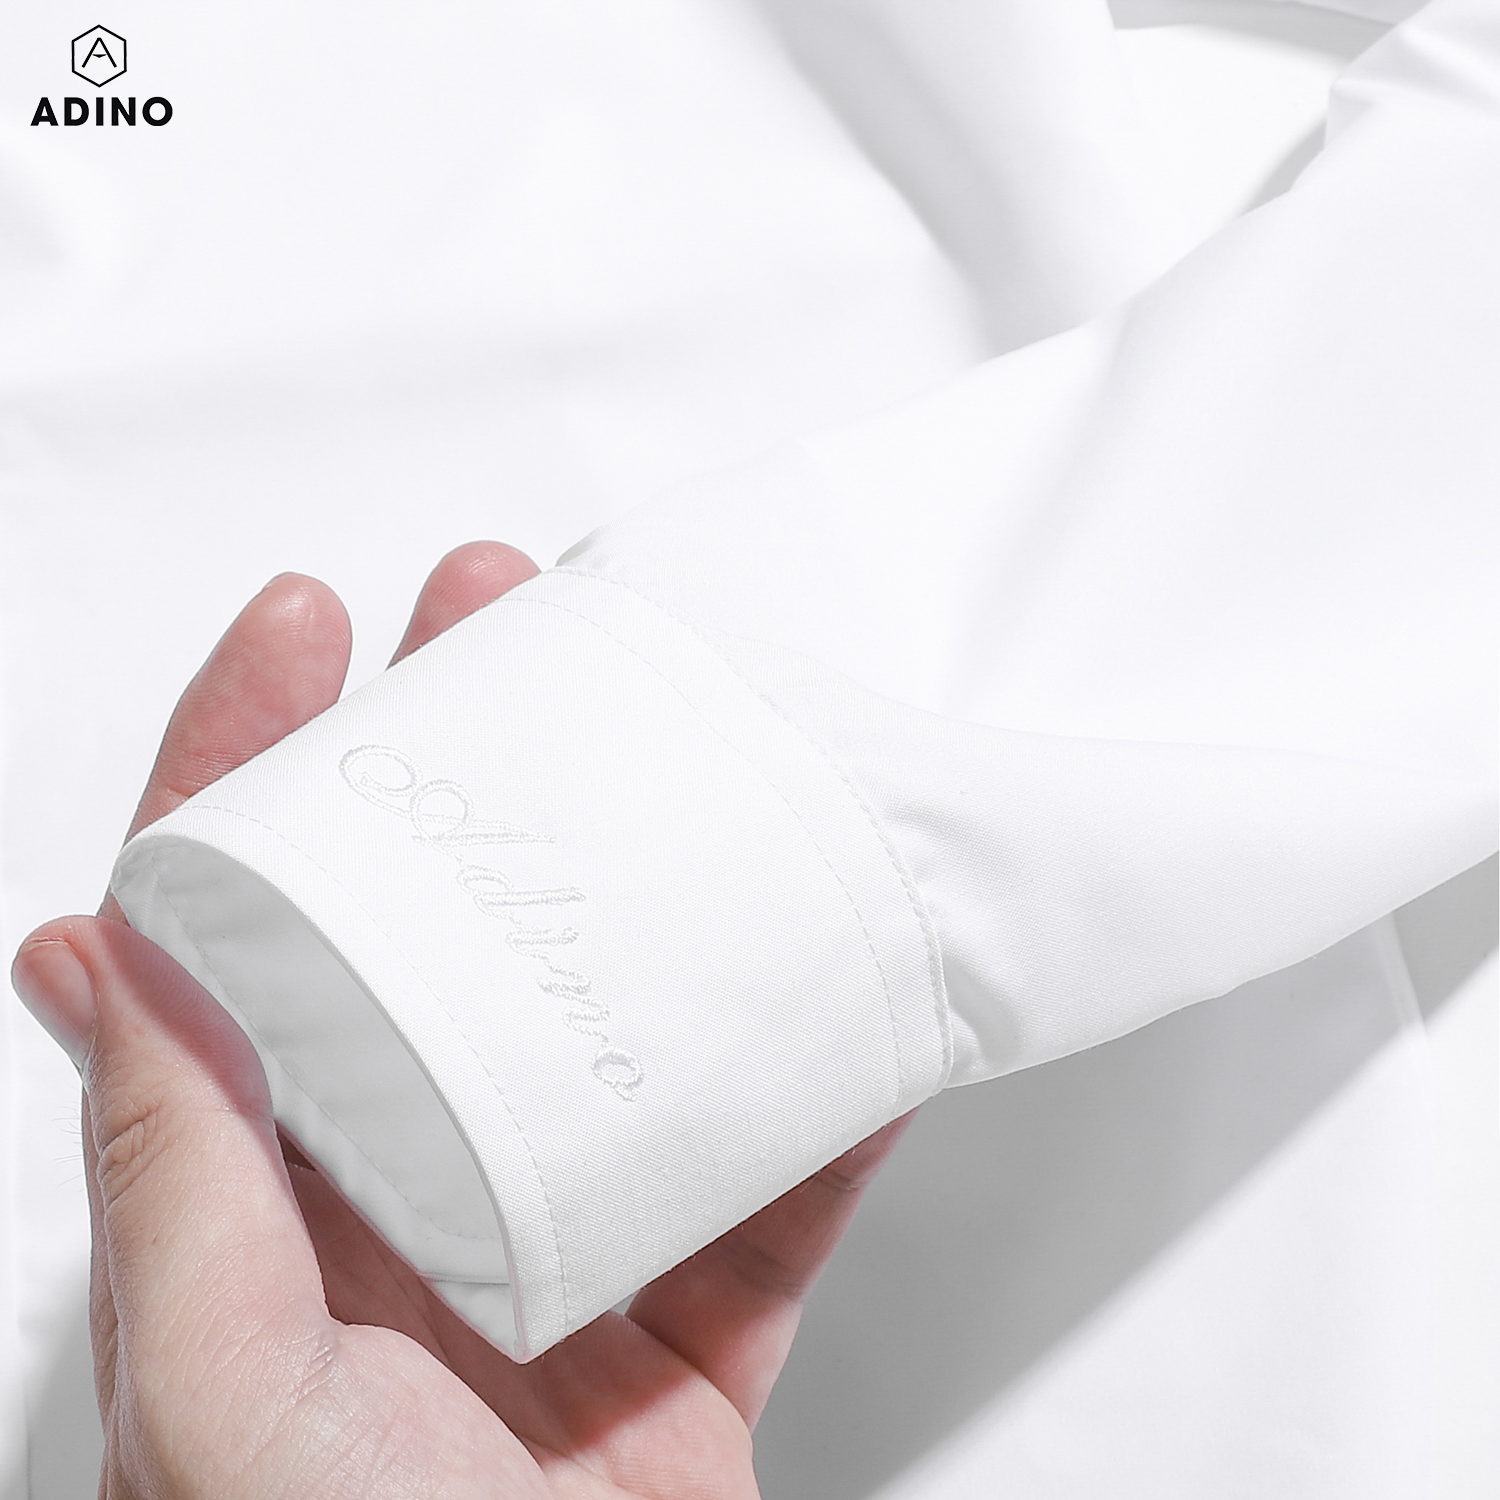 Hình ảnh Áo sơ mi nam tay dài ADINO màu trắng tinh vải sợi sồi modal dáng slimfit trẻ trung S302